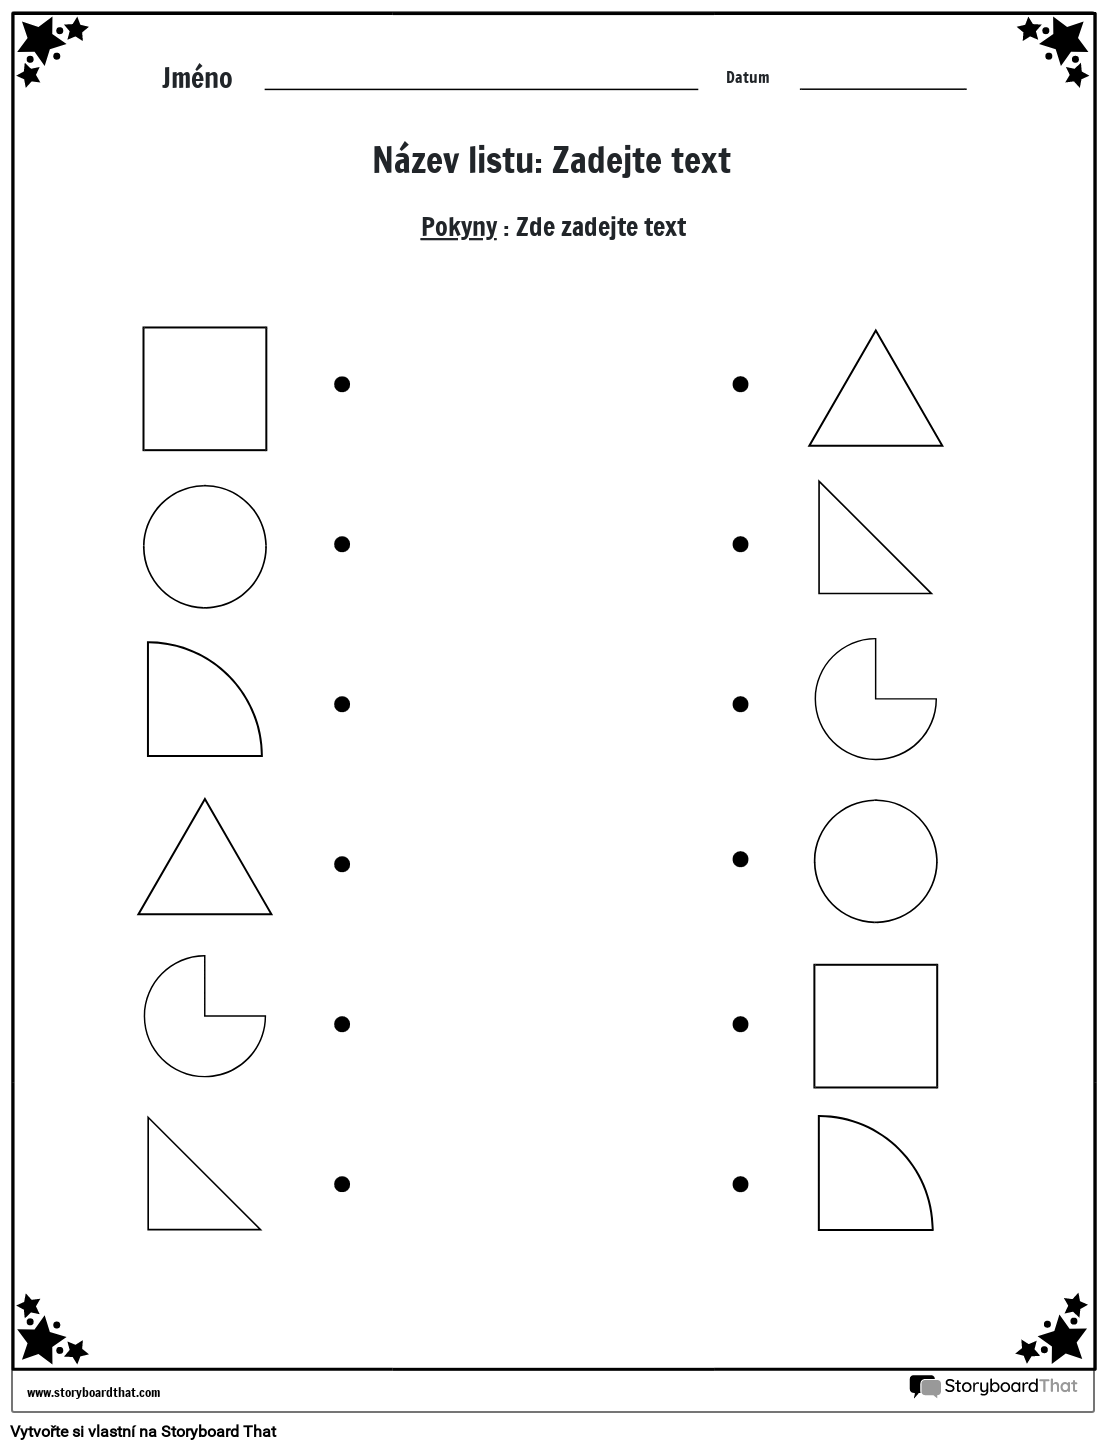 Pracovní list s odpovídajícími tvary (černobílý)